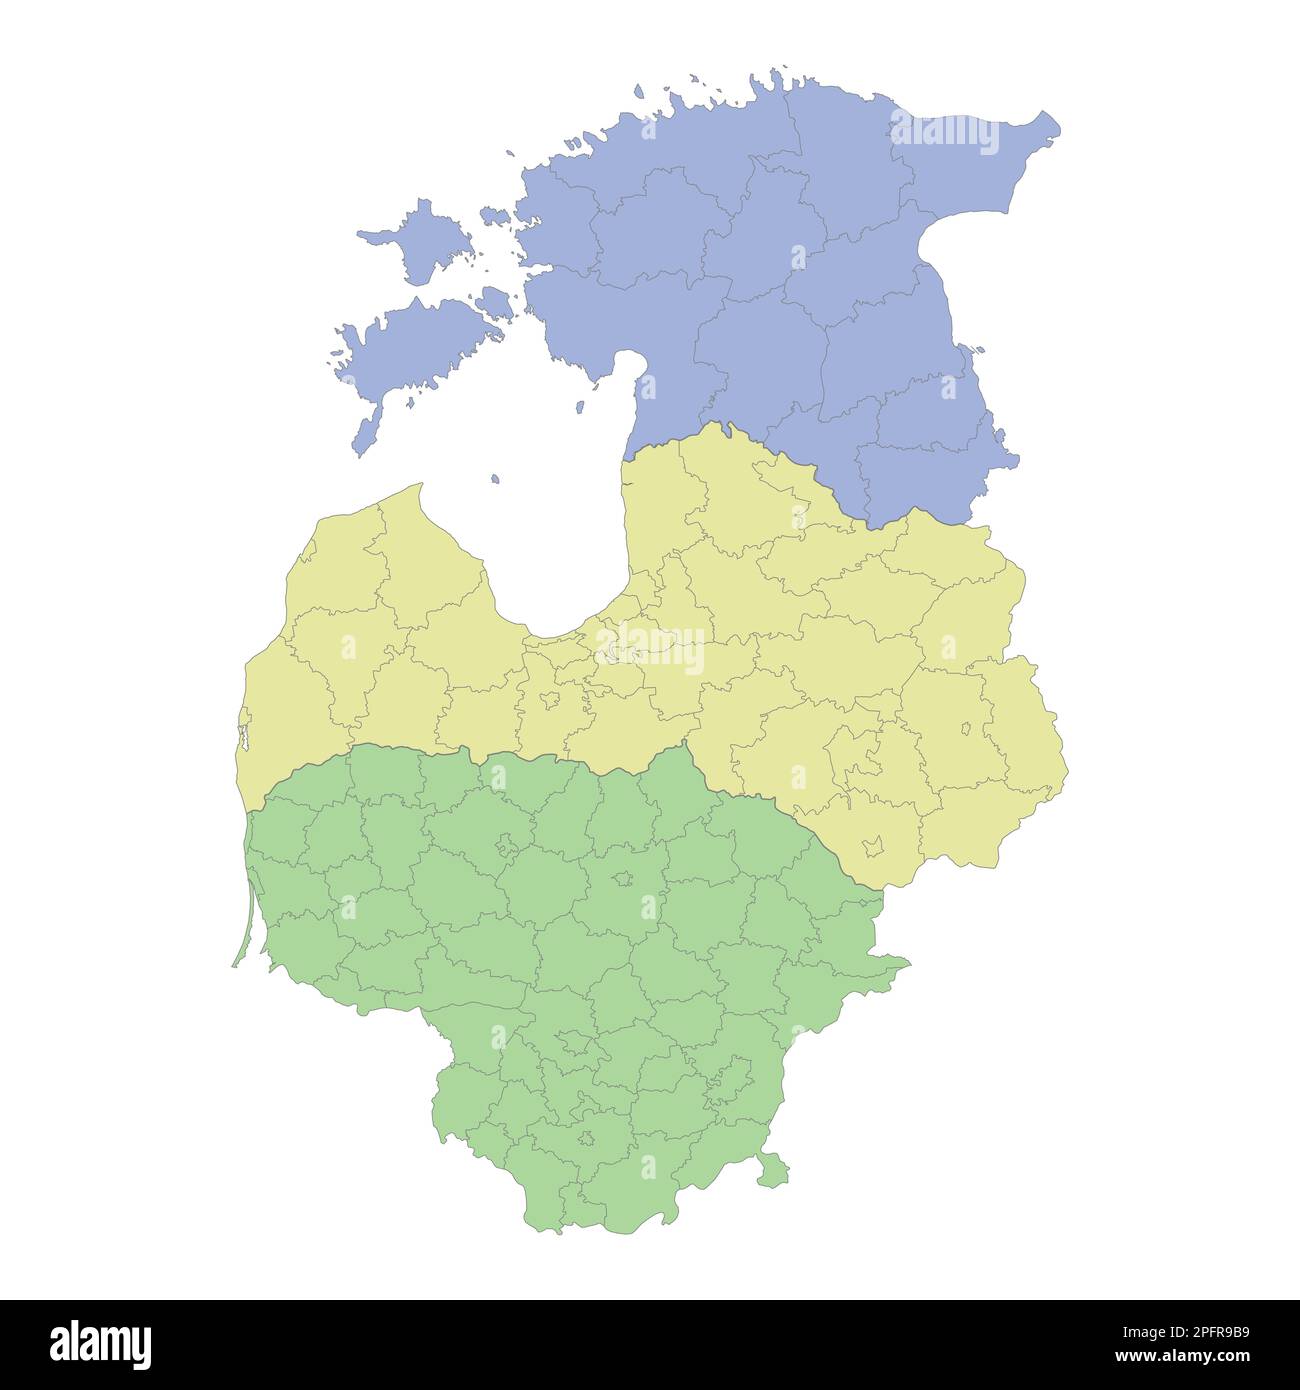 Mappa politica di alta qualità di Lituania, Lettonia ed Estonia con i confini delle regioni o delle province. Illustrazione vettoriale Illustrazione Vettoriale